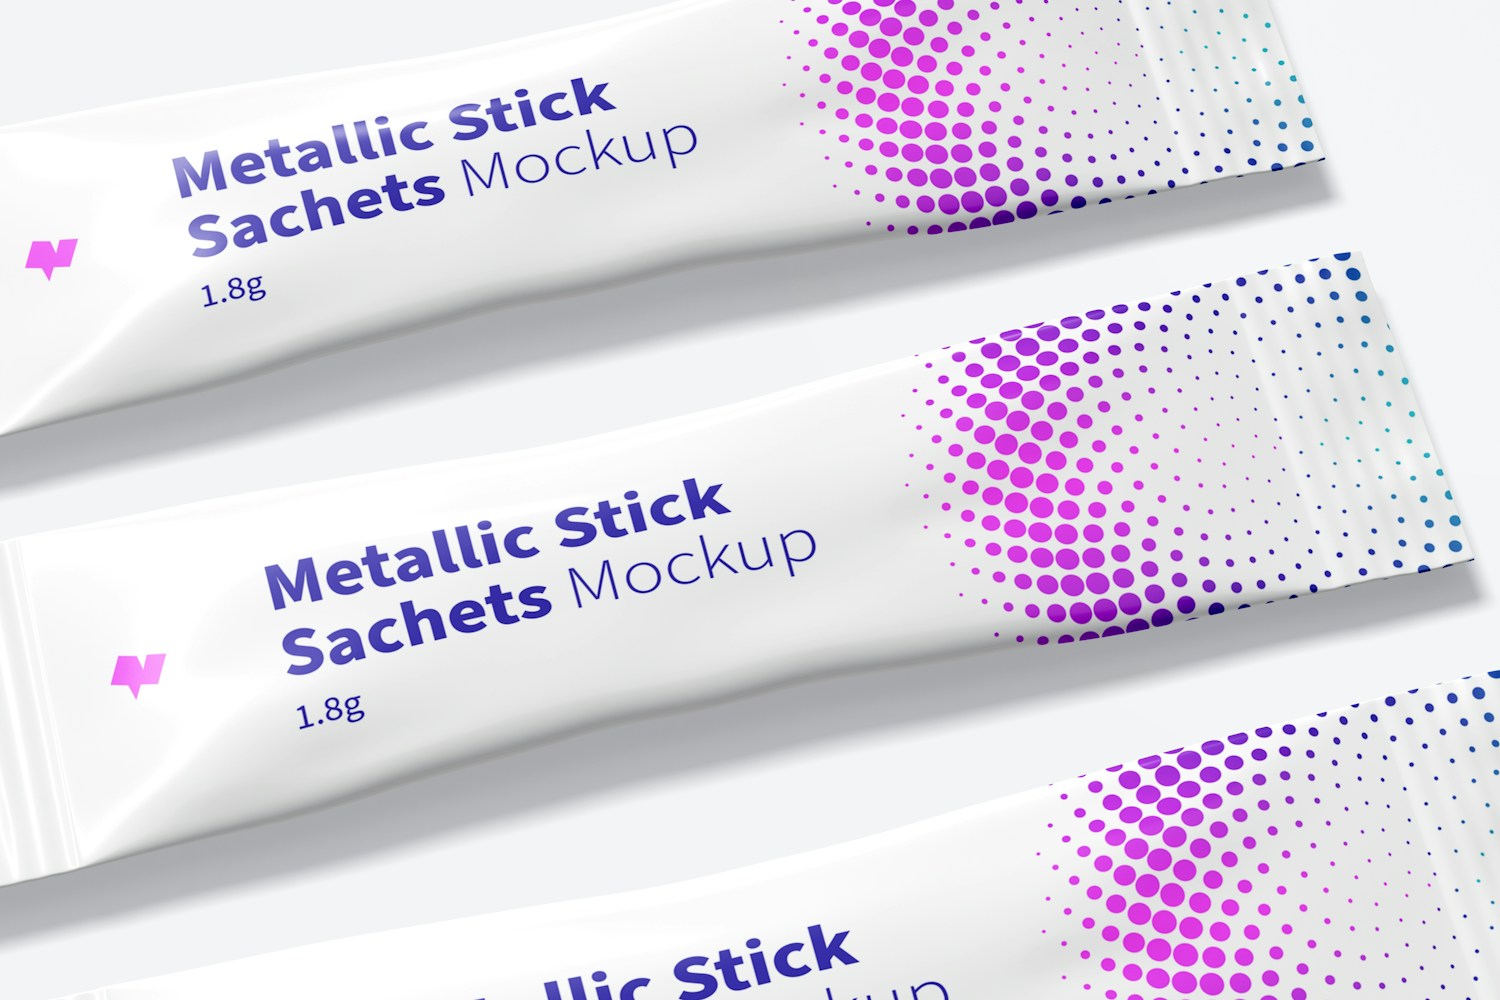 Metallic Stick Sachets Mockup, Close Up